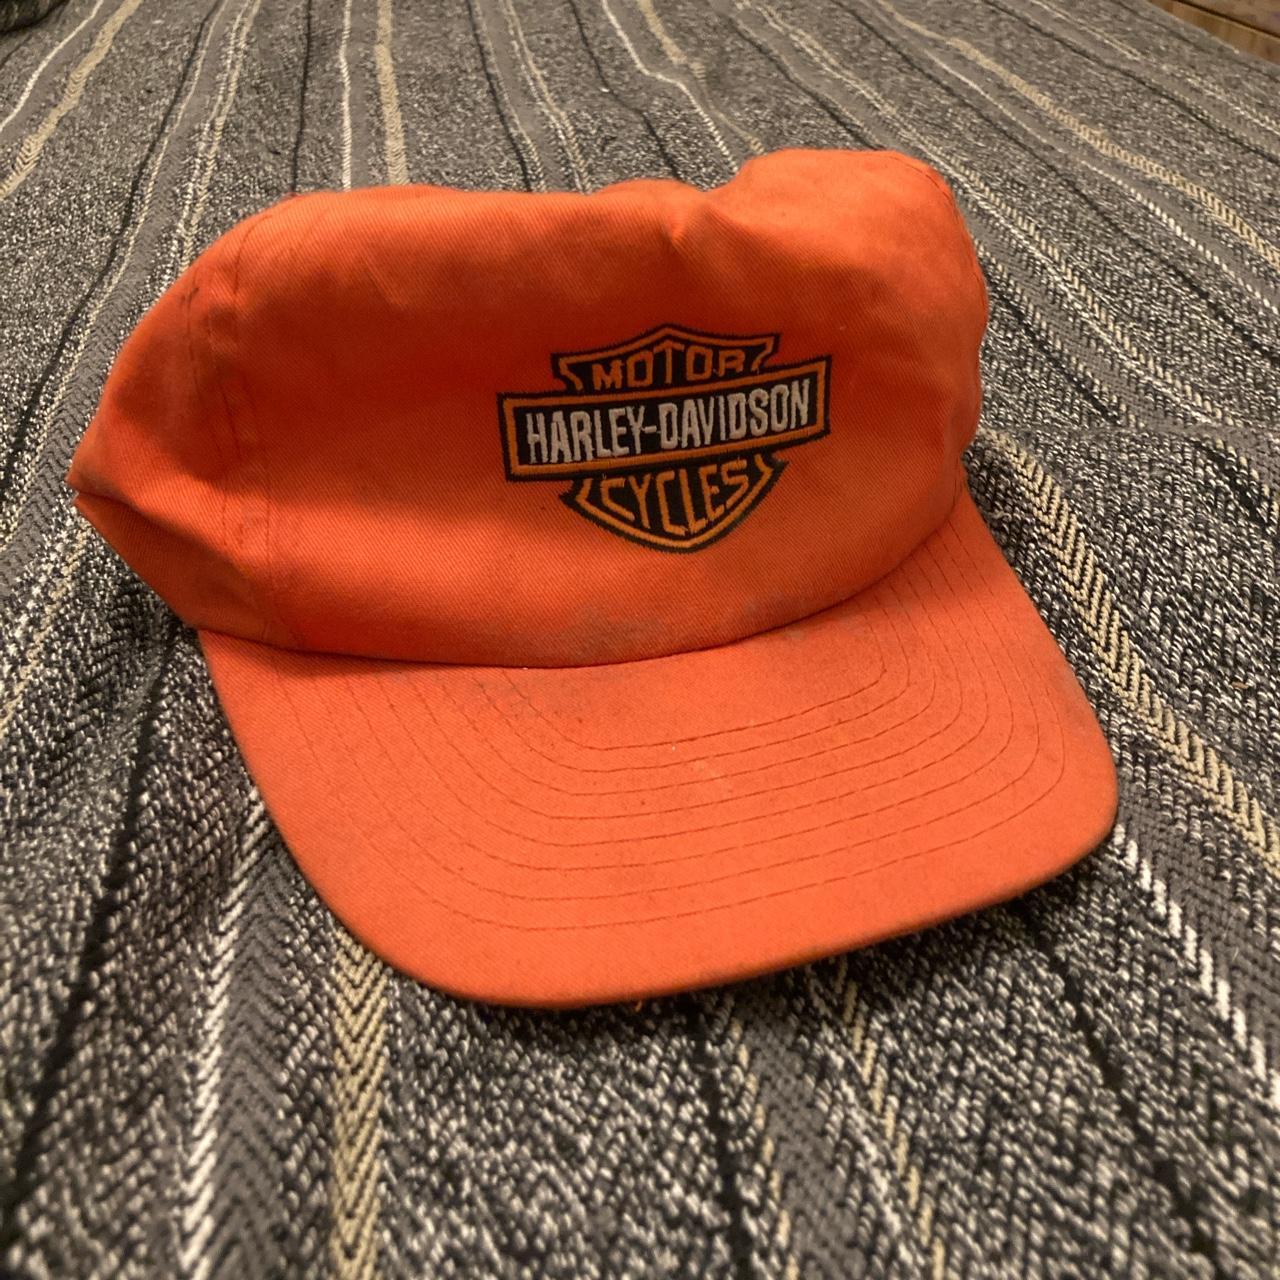 Harley Davidson Men's Orange and Black Hat